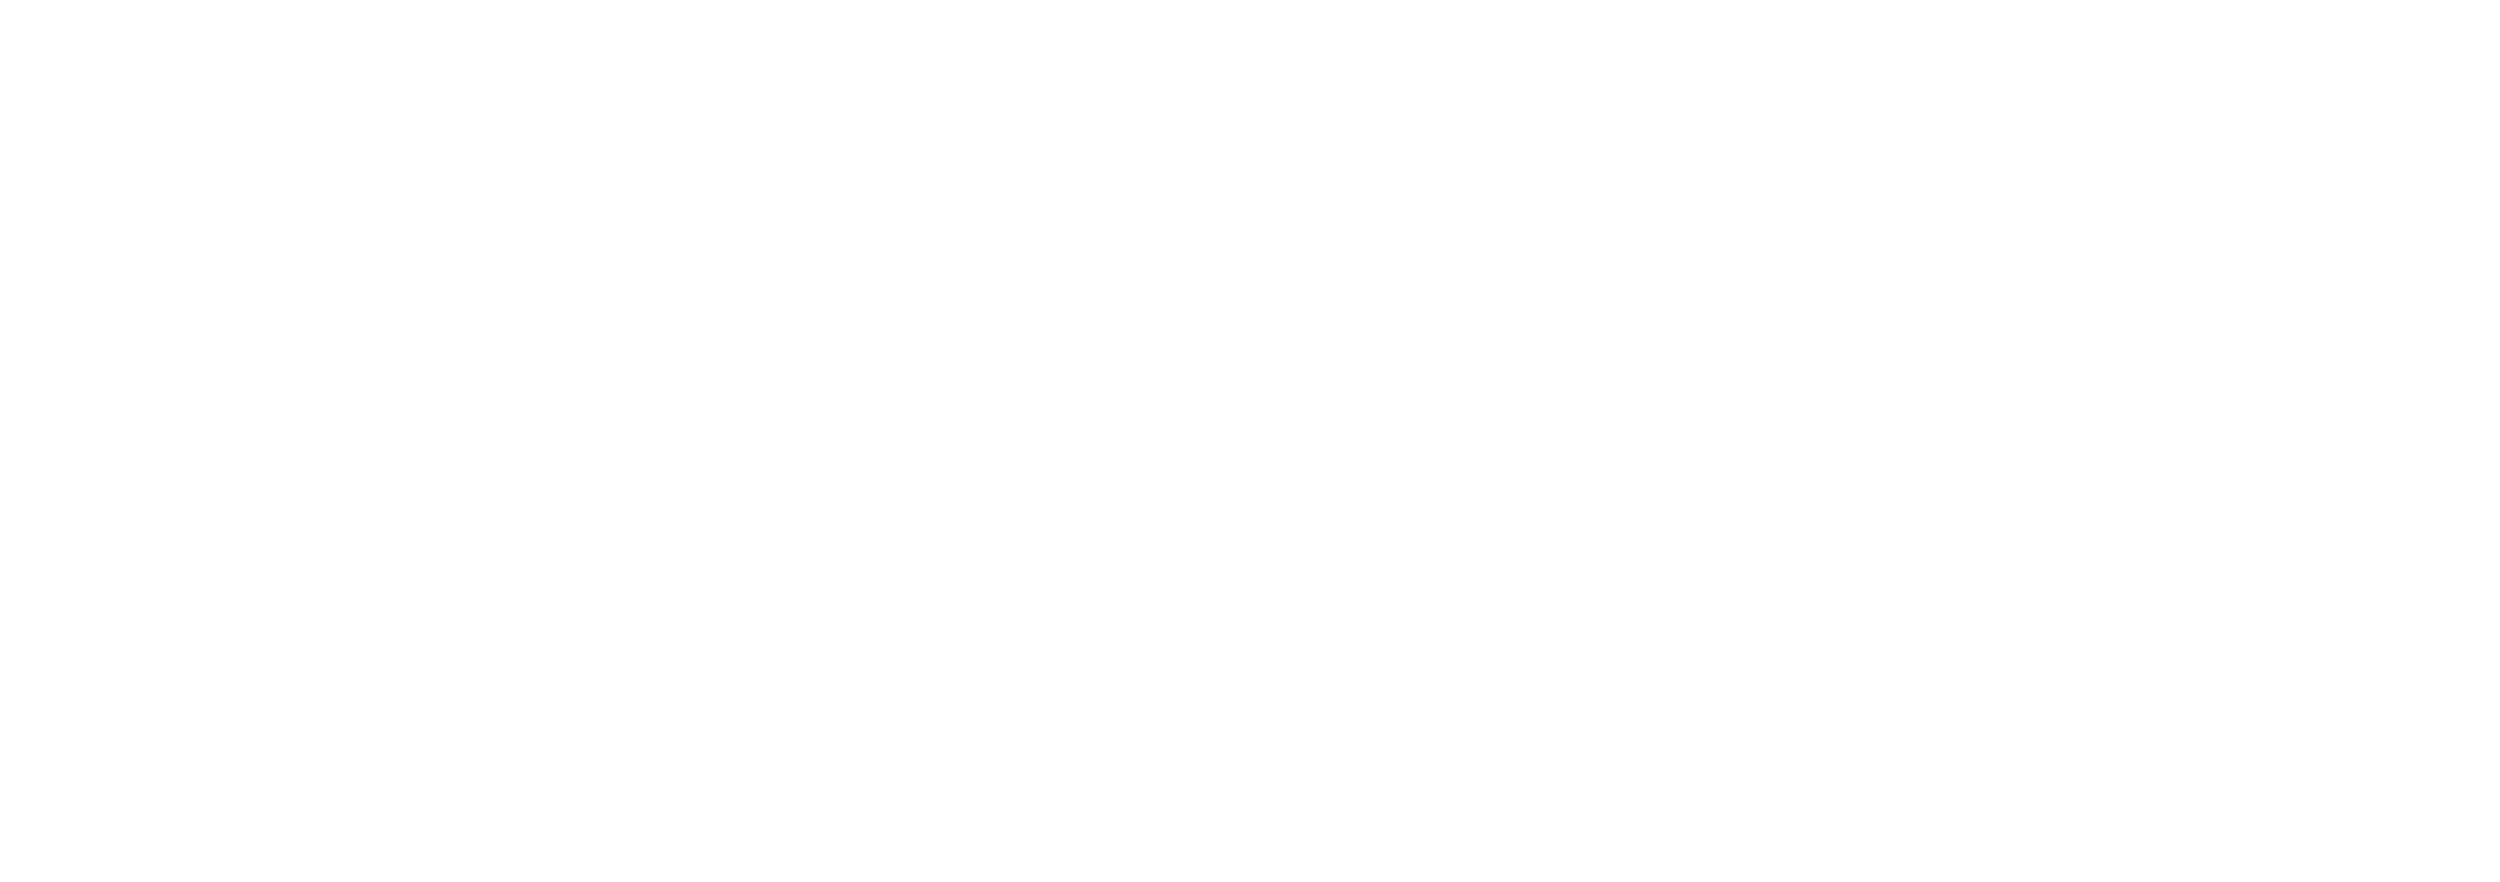 logotipo agencia site lider